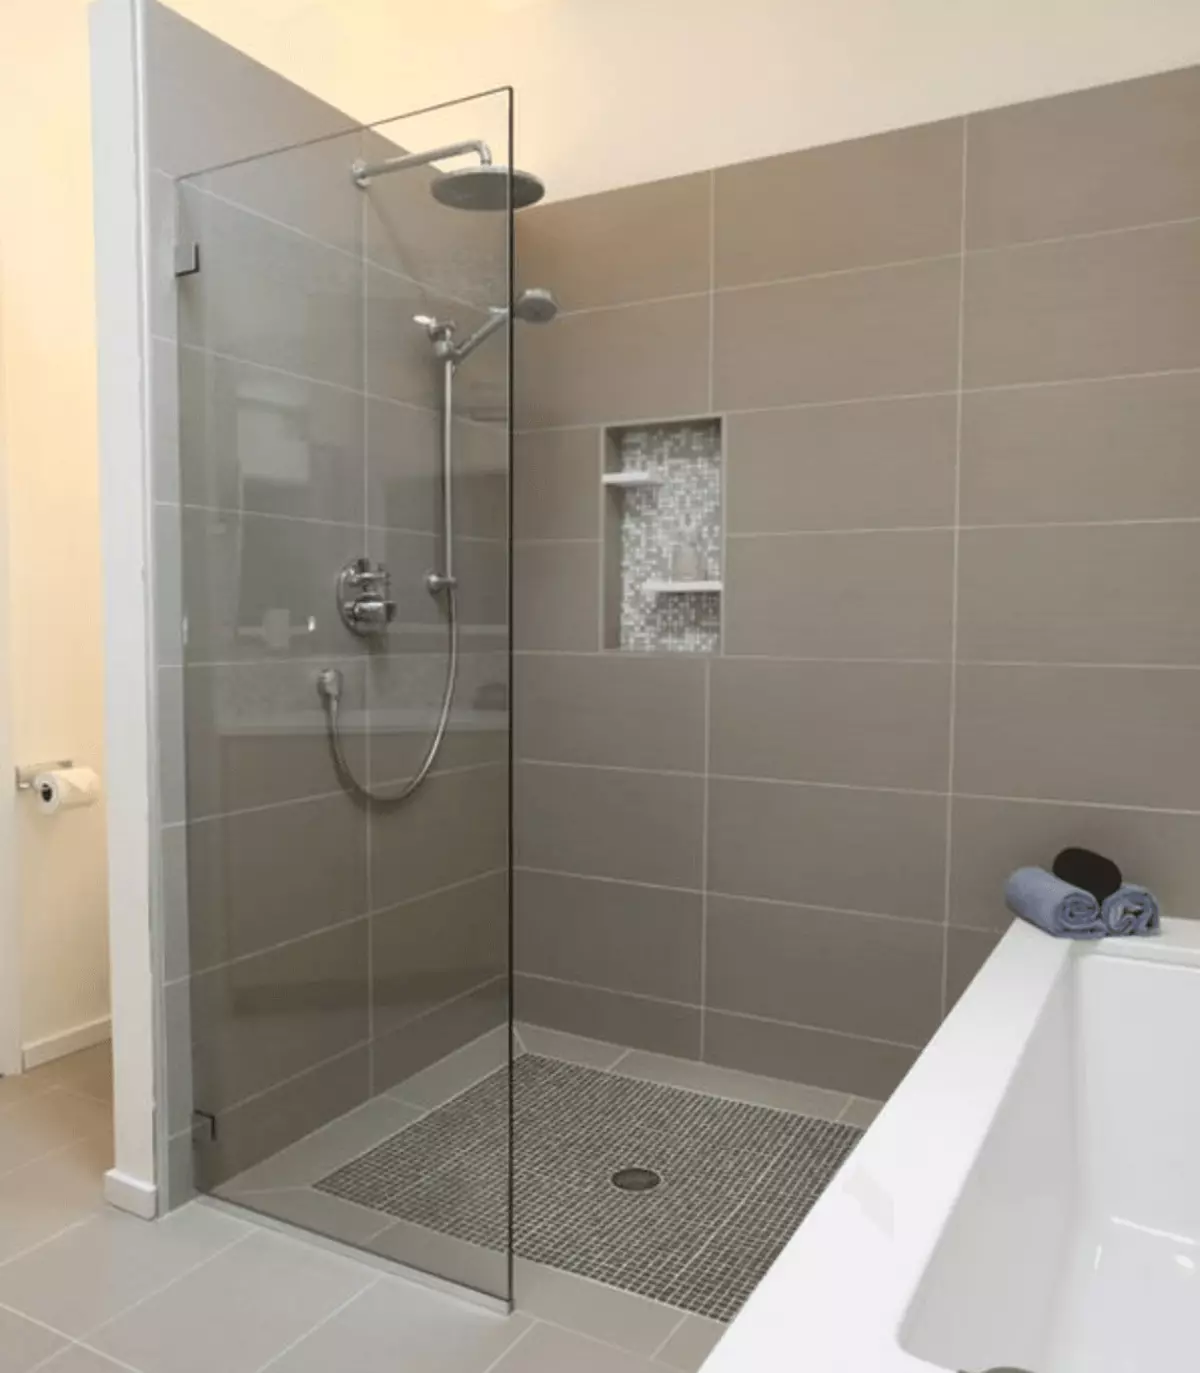 キャビンなしのバスルームのシャワー（86写真）：パレットとタイルキャビン、プロジェクトなしのシャワー付きバスルームデザインオプション 21384_19